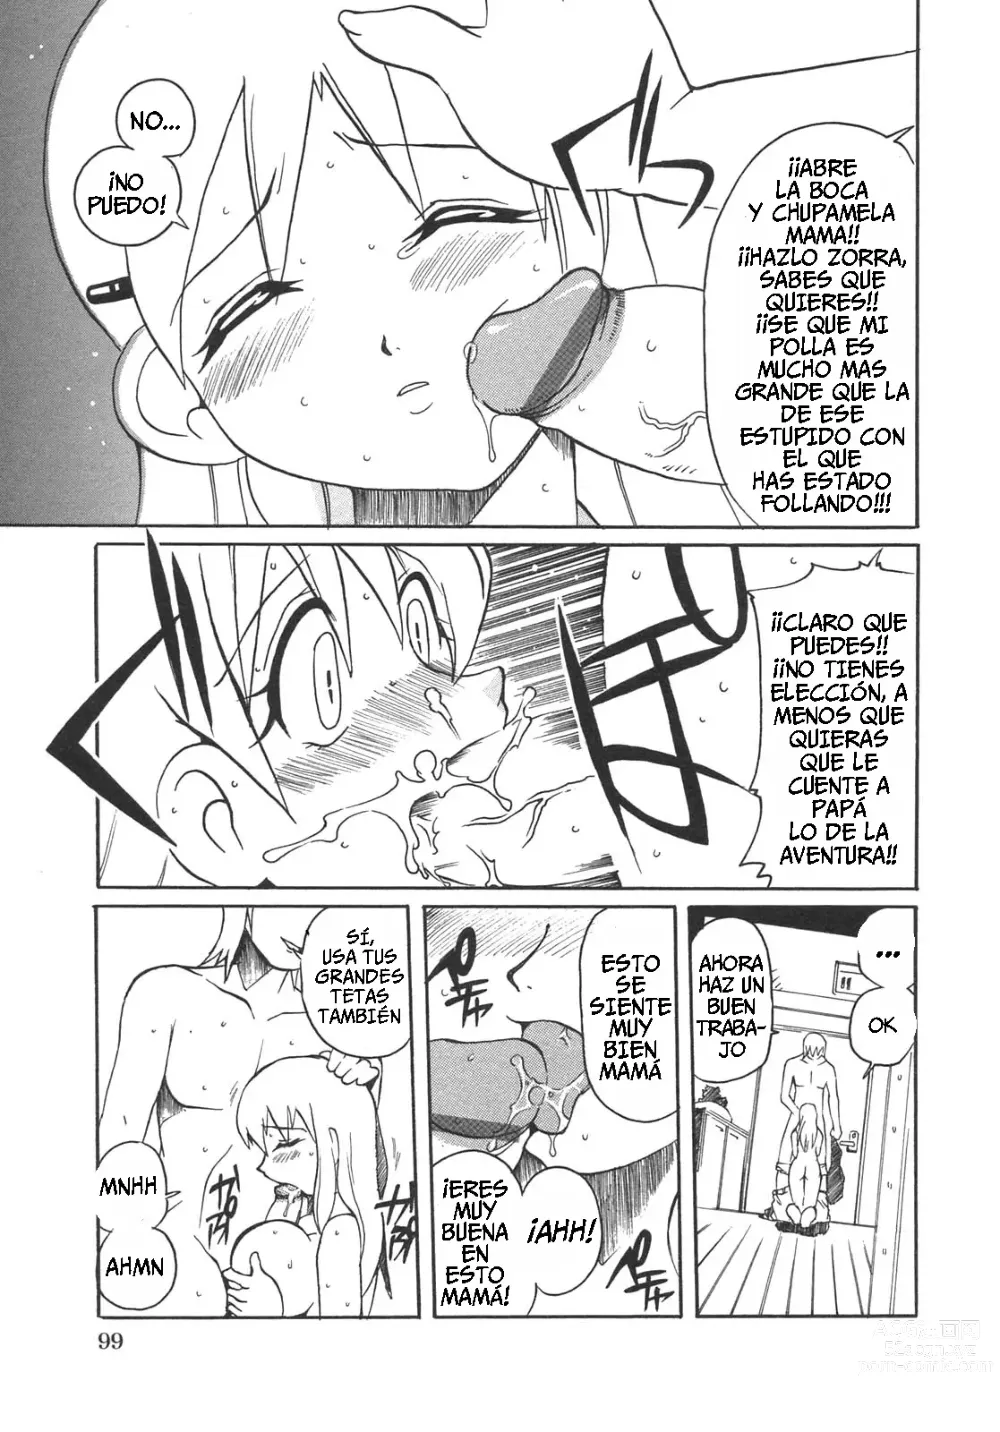 Page 7 of manga Castigando a Mamá